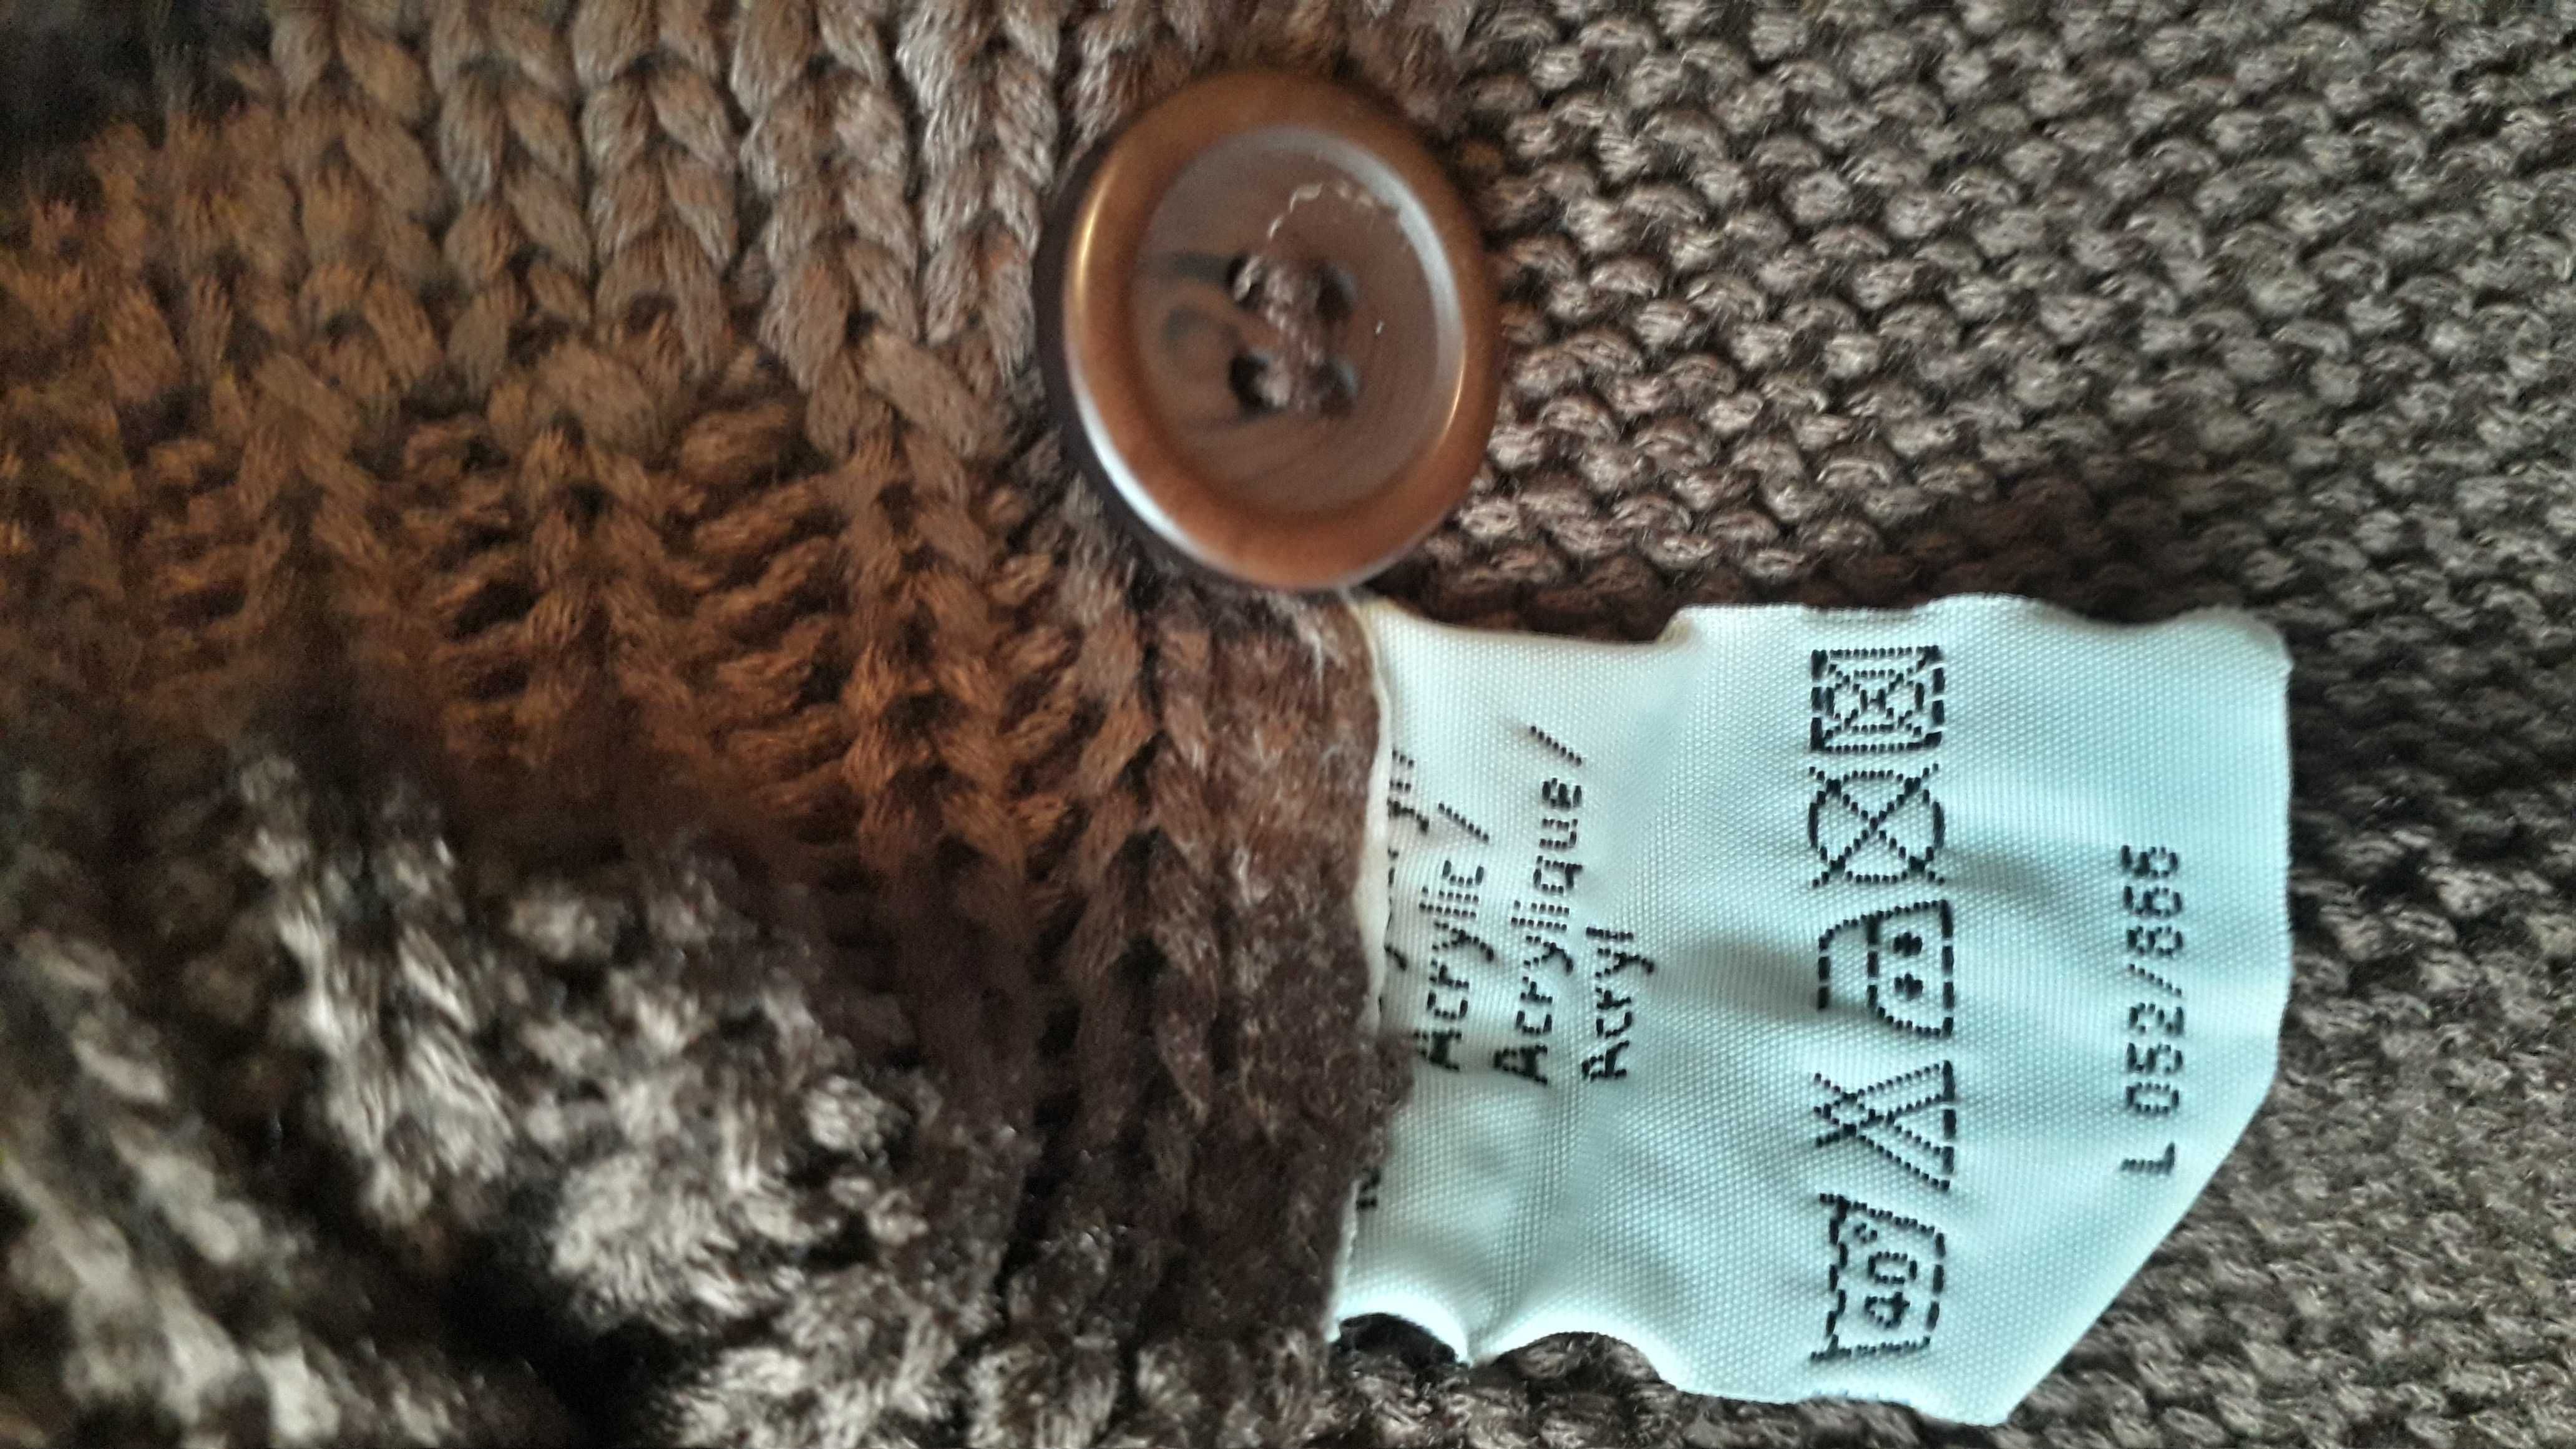 Brązowy sweter rozpinany  kardigan podkreślający talię